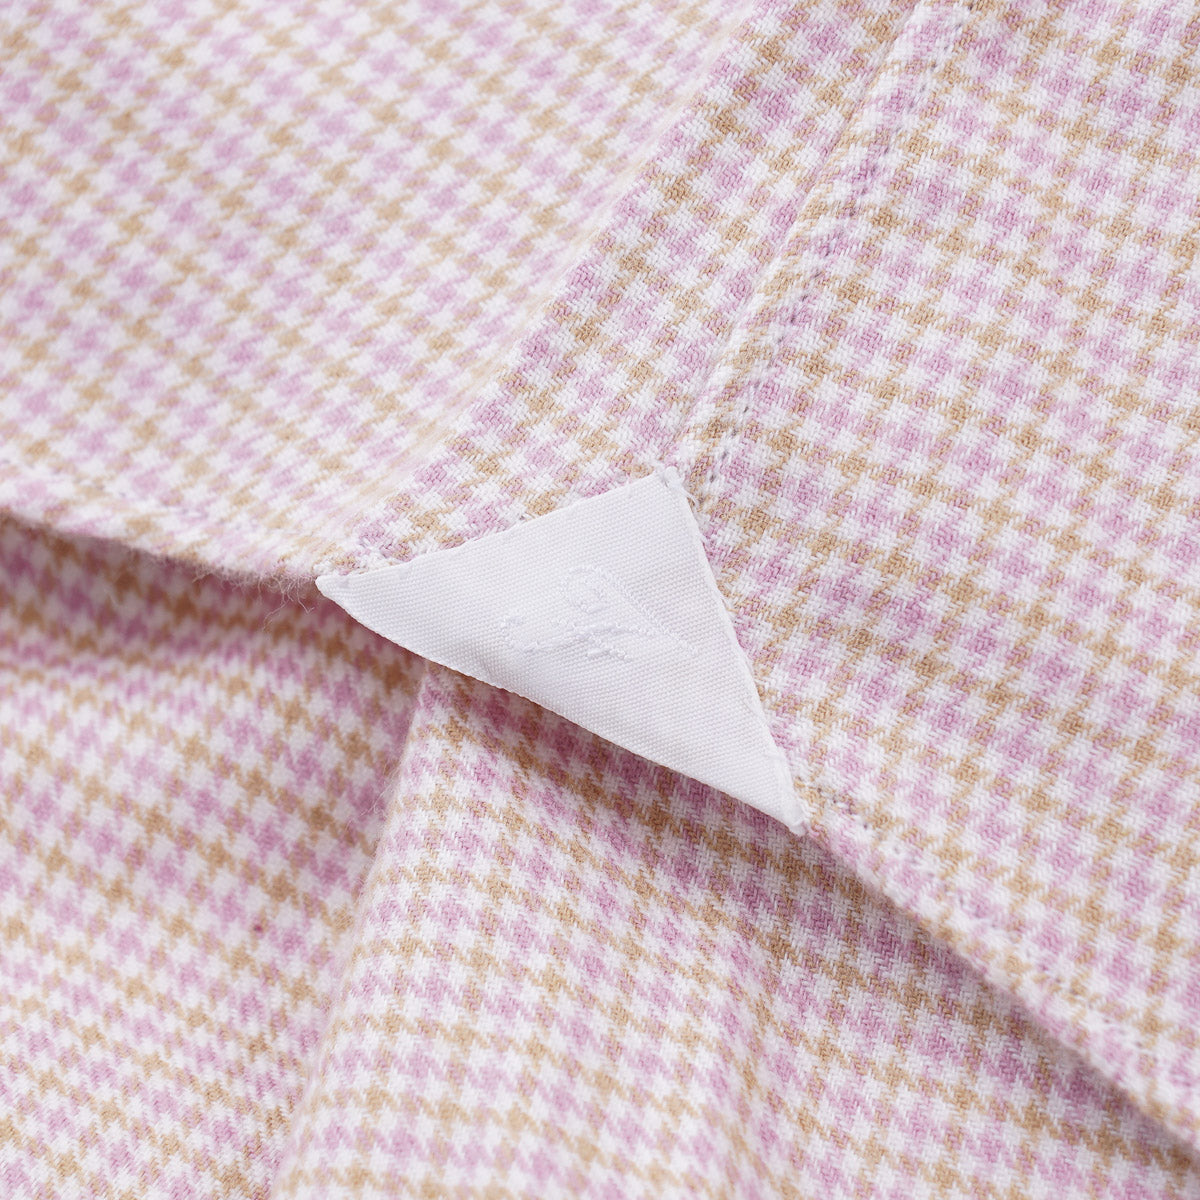 Finamore Extra-Soft Cashmere Cotton Shirt - Top Shelf Apparel